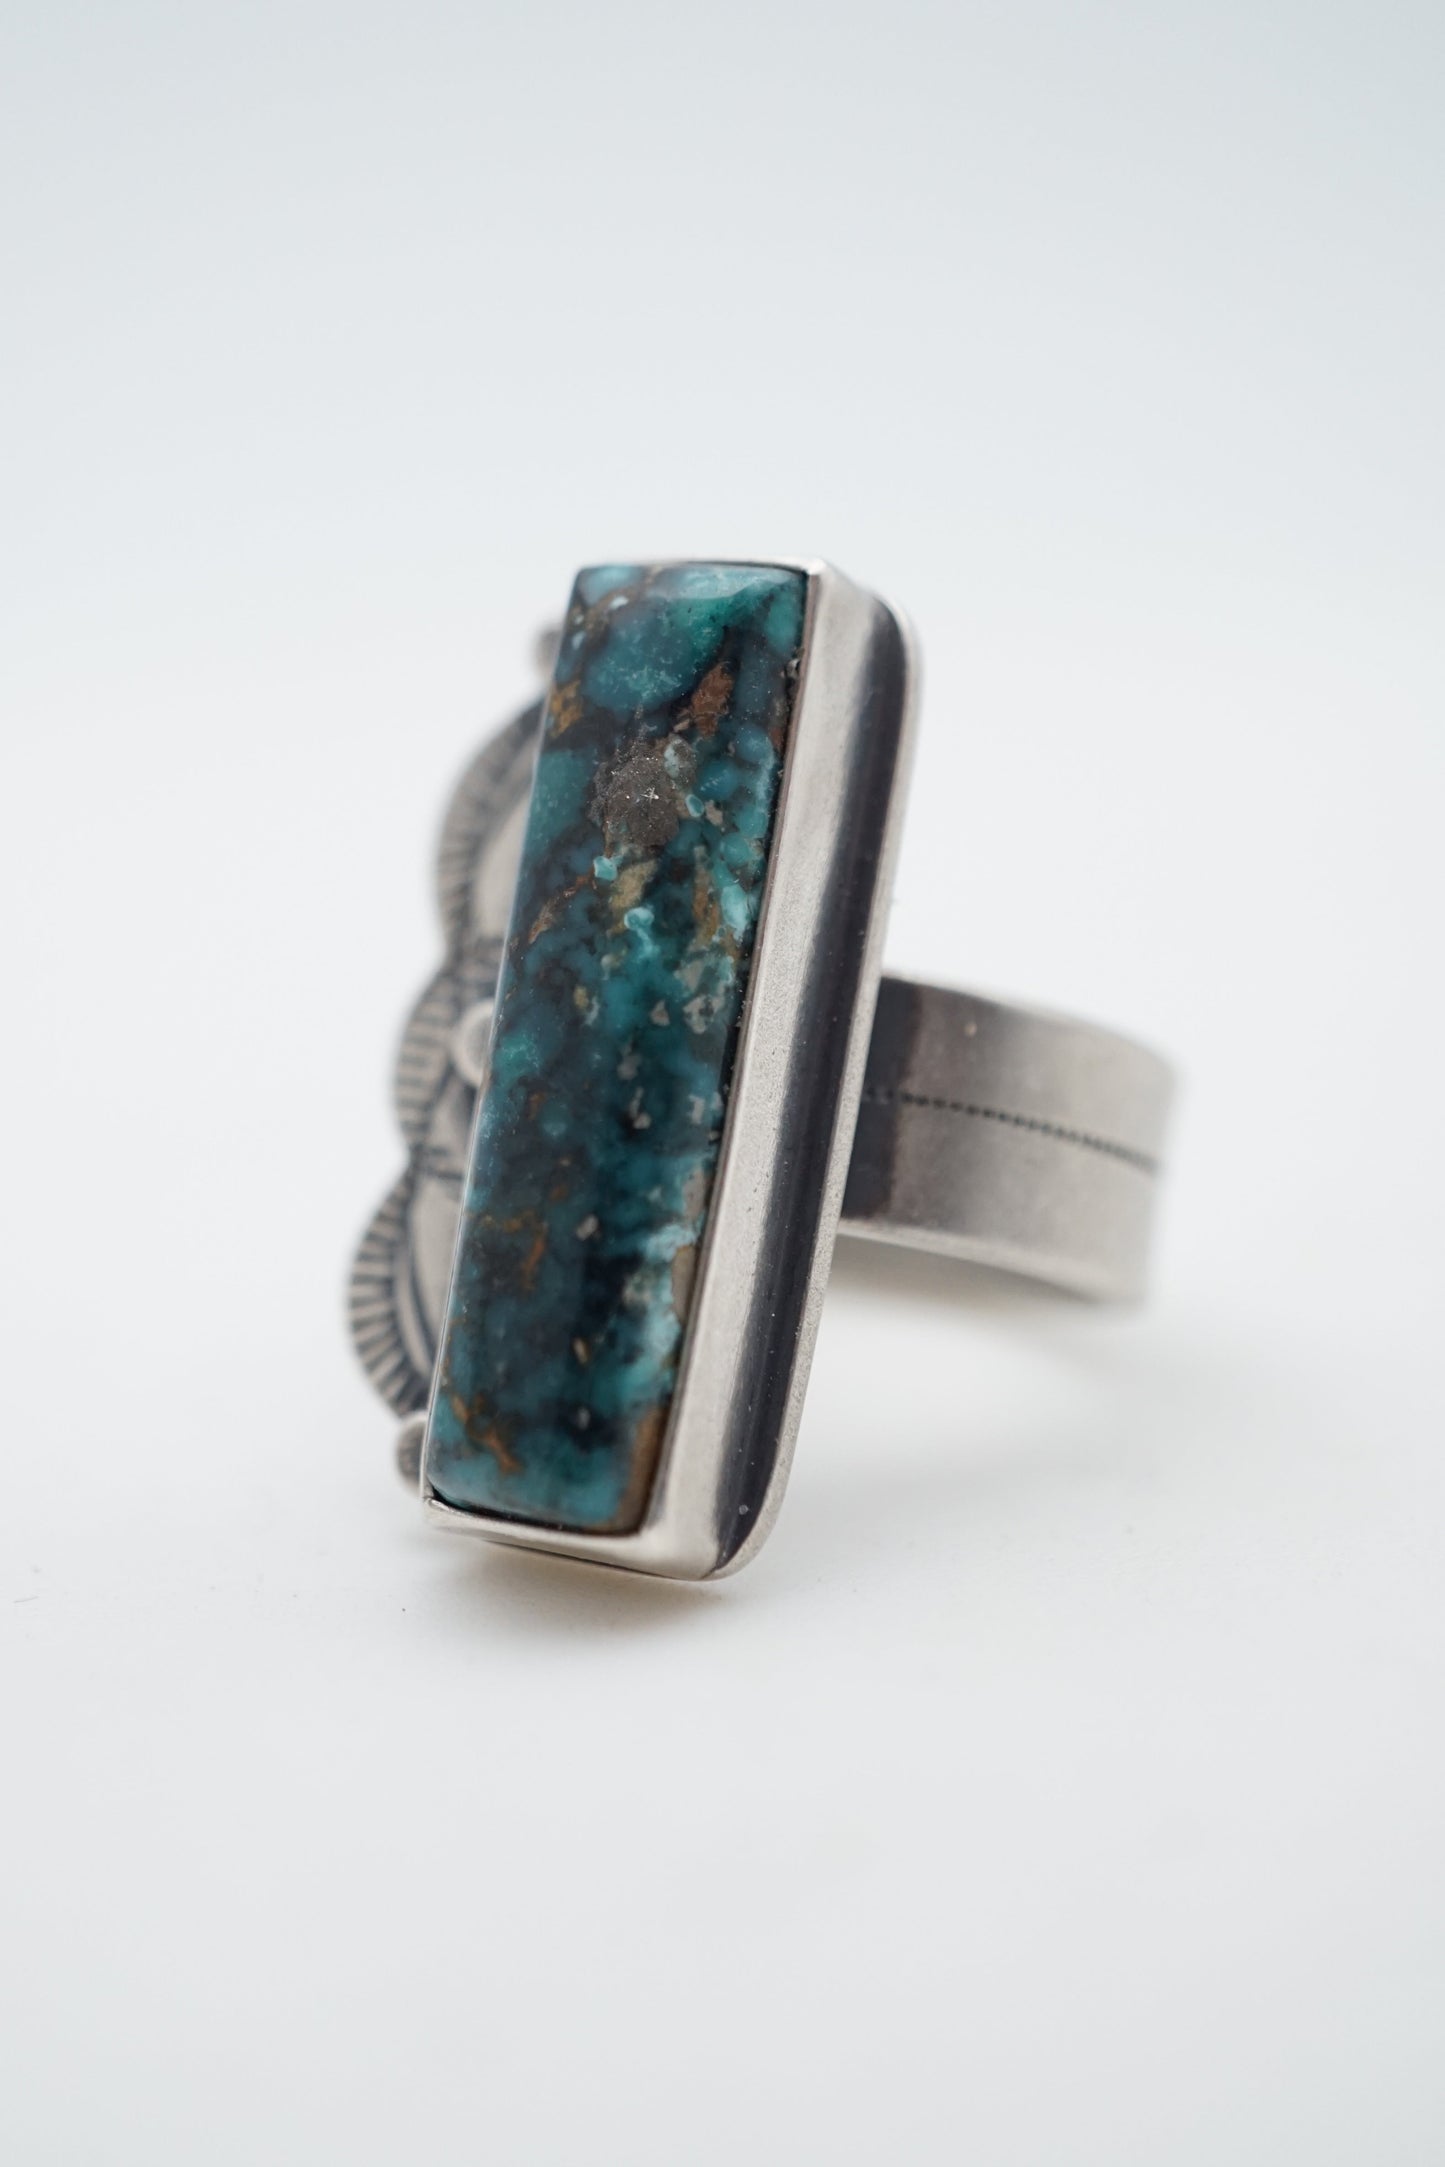 sierra nevada boulder turquoise ring - size 7 - Lumenrose